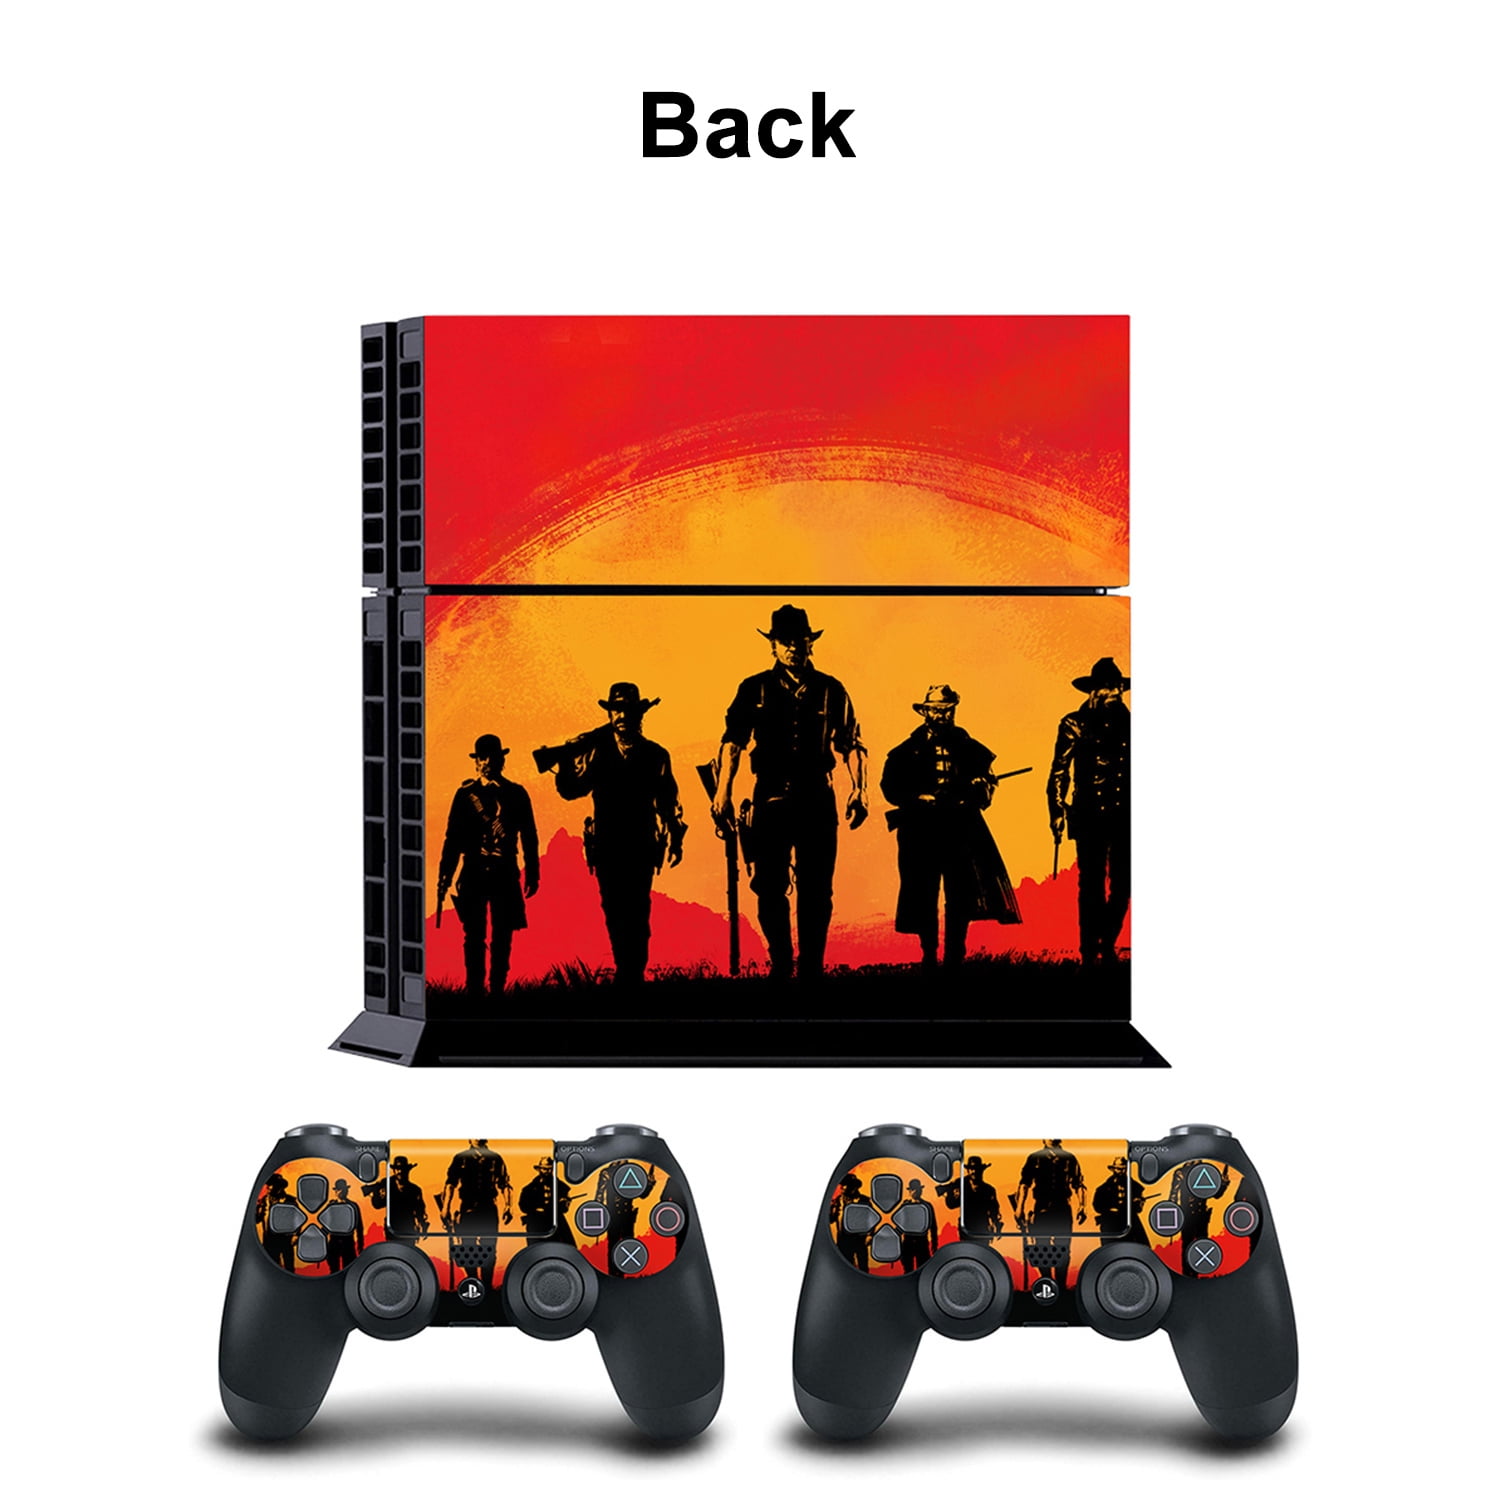 Red Dead Redemption 2 PS4 - Código Digital - PentaKill Store - PentaKill  Store - Gift Card e Games